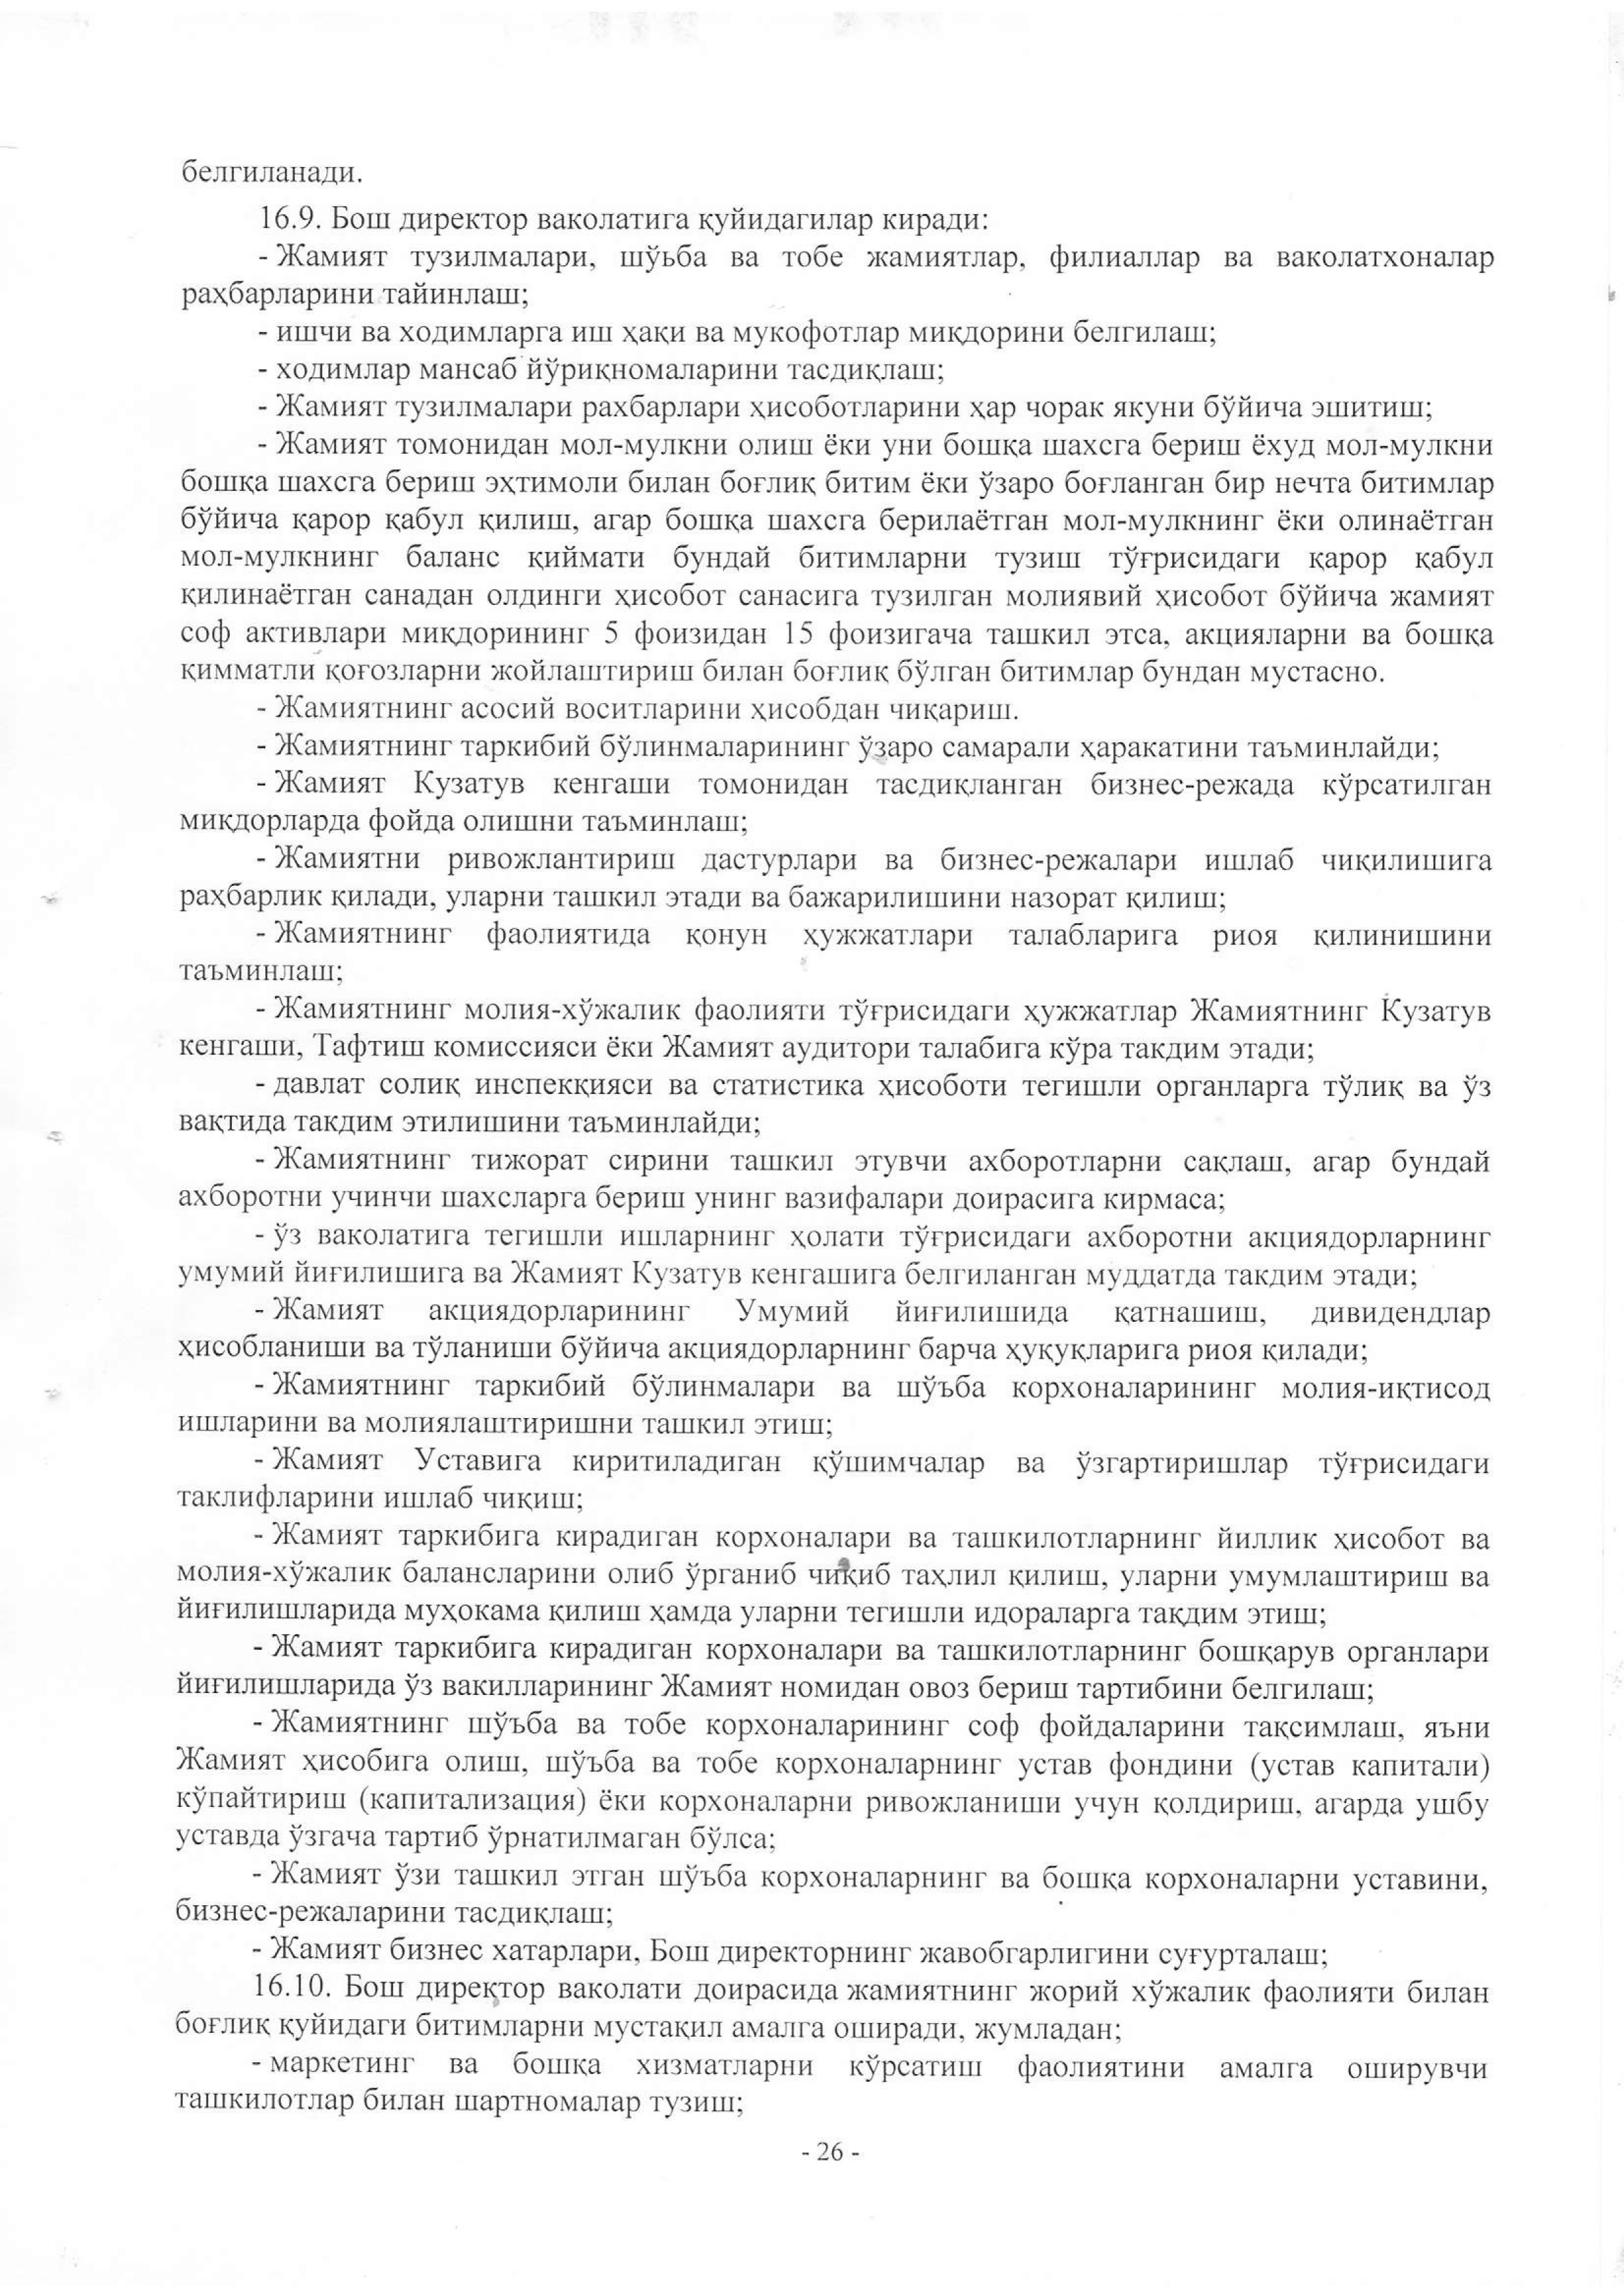 устав 2019 жахон бозори-26